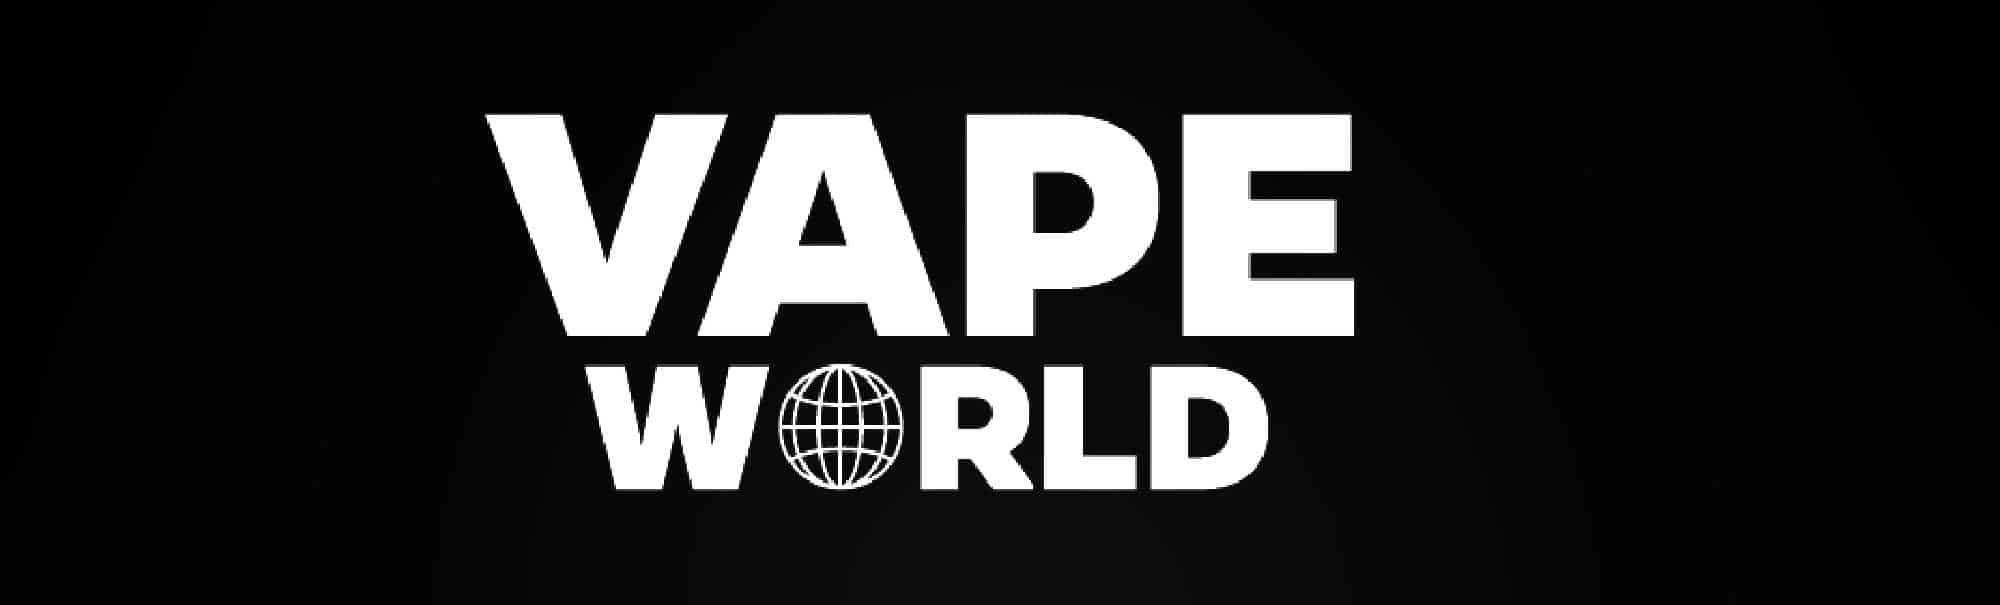 image of vape world logo